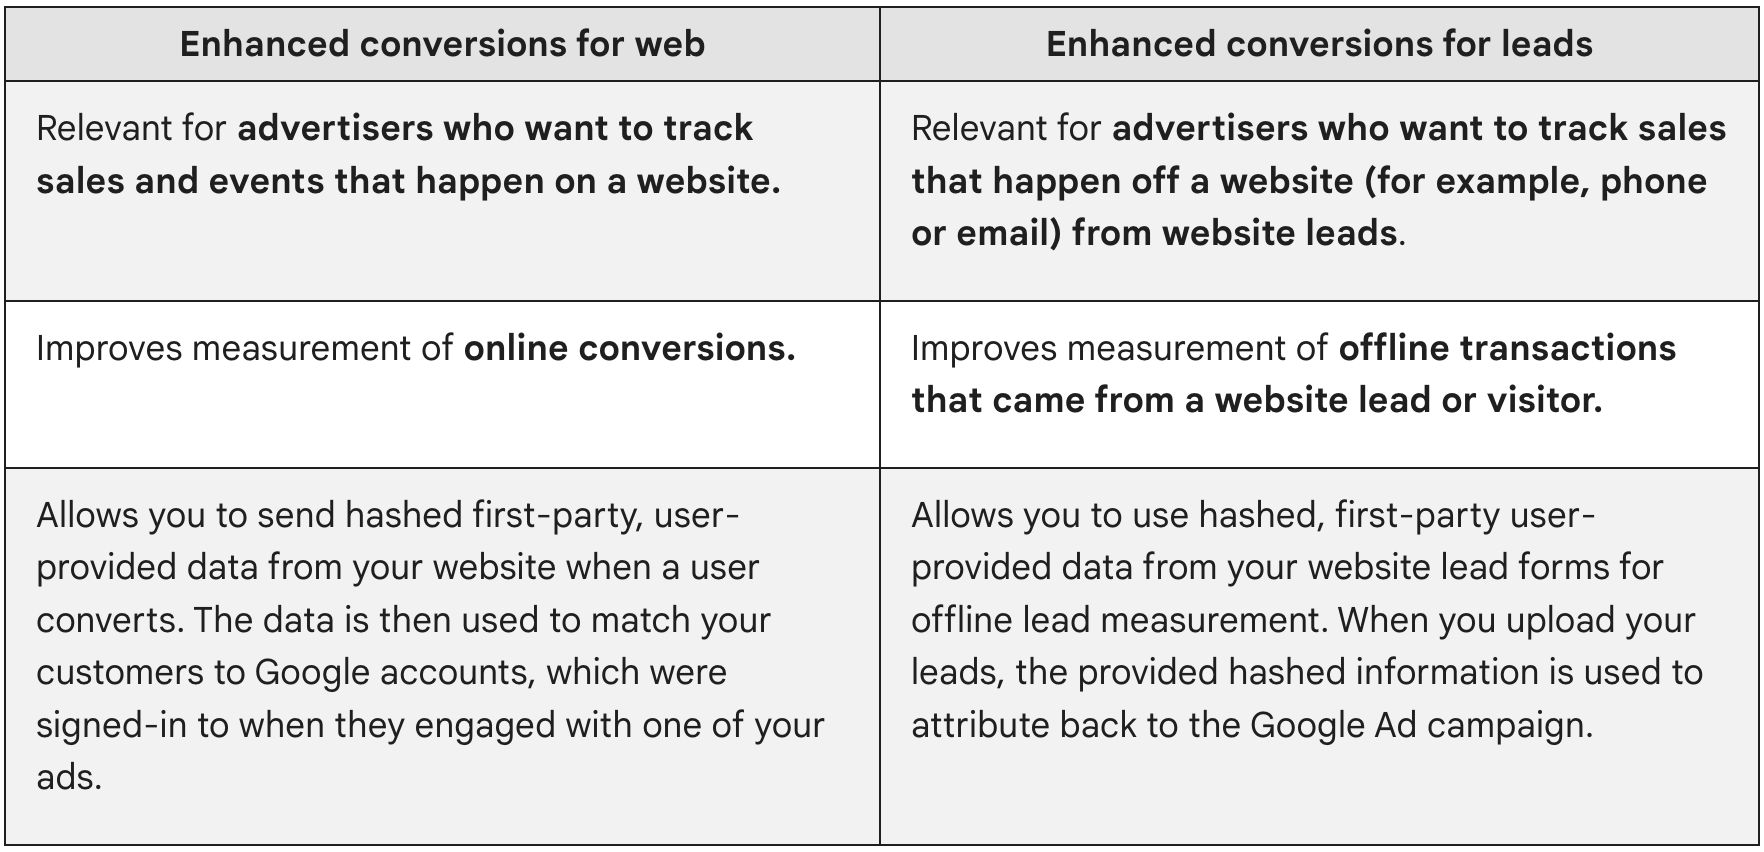 Le conversioni avanzate per il web sono pertinenti per gli inserzionisti che vogliono monitorare le vendite e gli eventi che si verificano su un sito web. Le conversioni avanzate per i lead sono pertinenti per gli inserzionisti che vogliono monitorare le vendite generate dai lead provenienti da un sito web (ad esempio, da telefono o email).